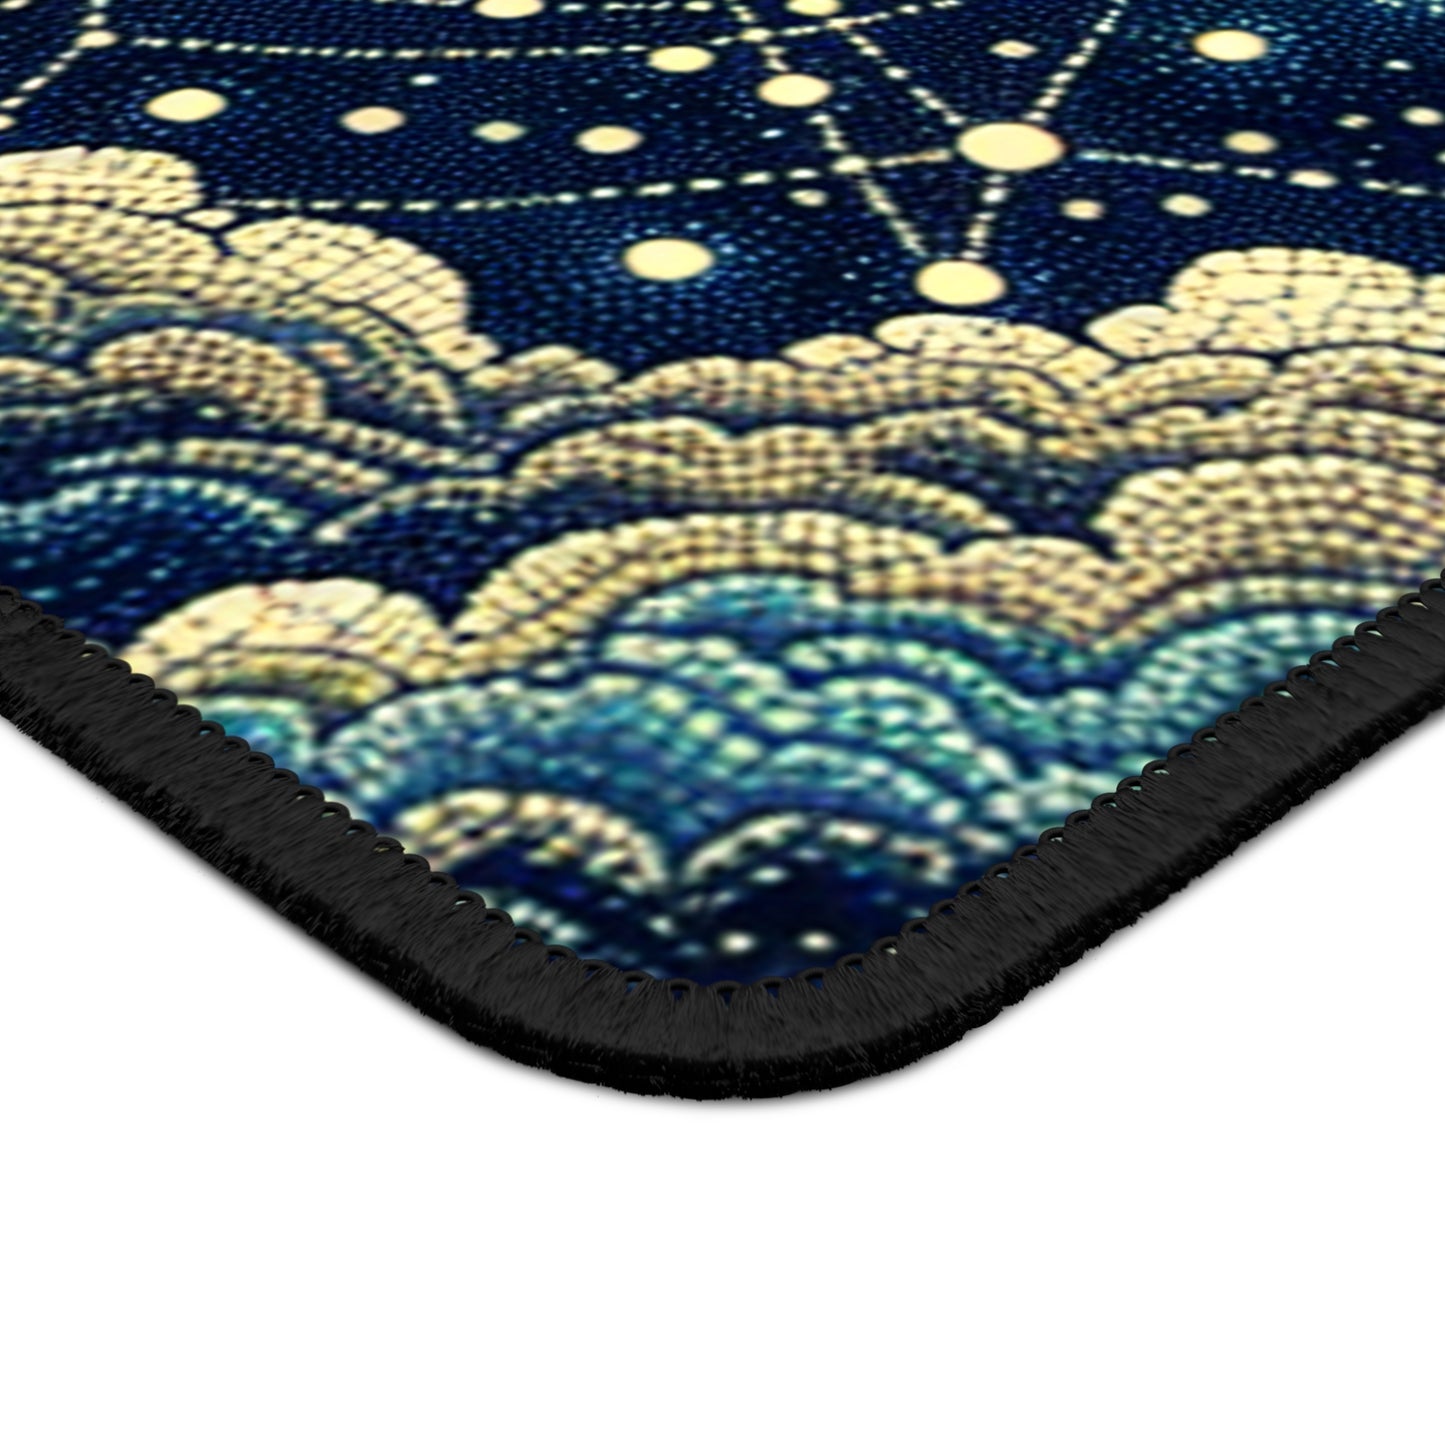 "Dotting the Heavens" - Le style pointillisme du tapis de souris Alien Gaming